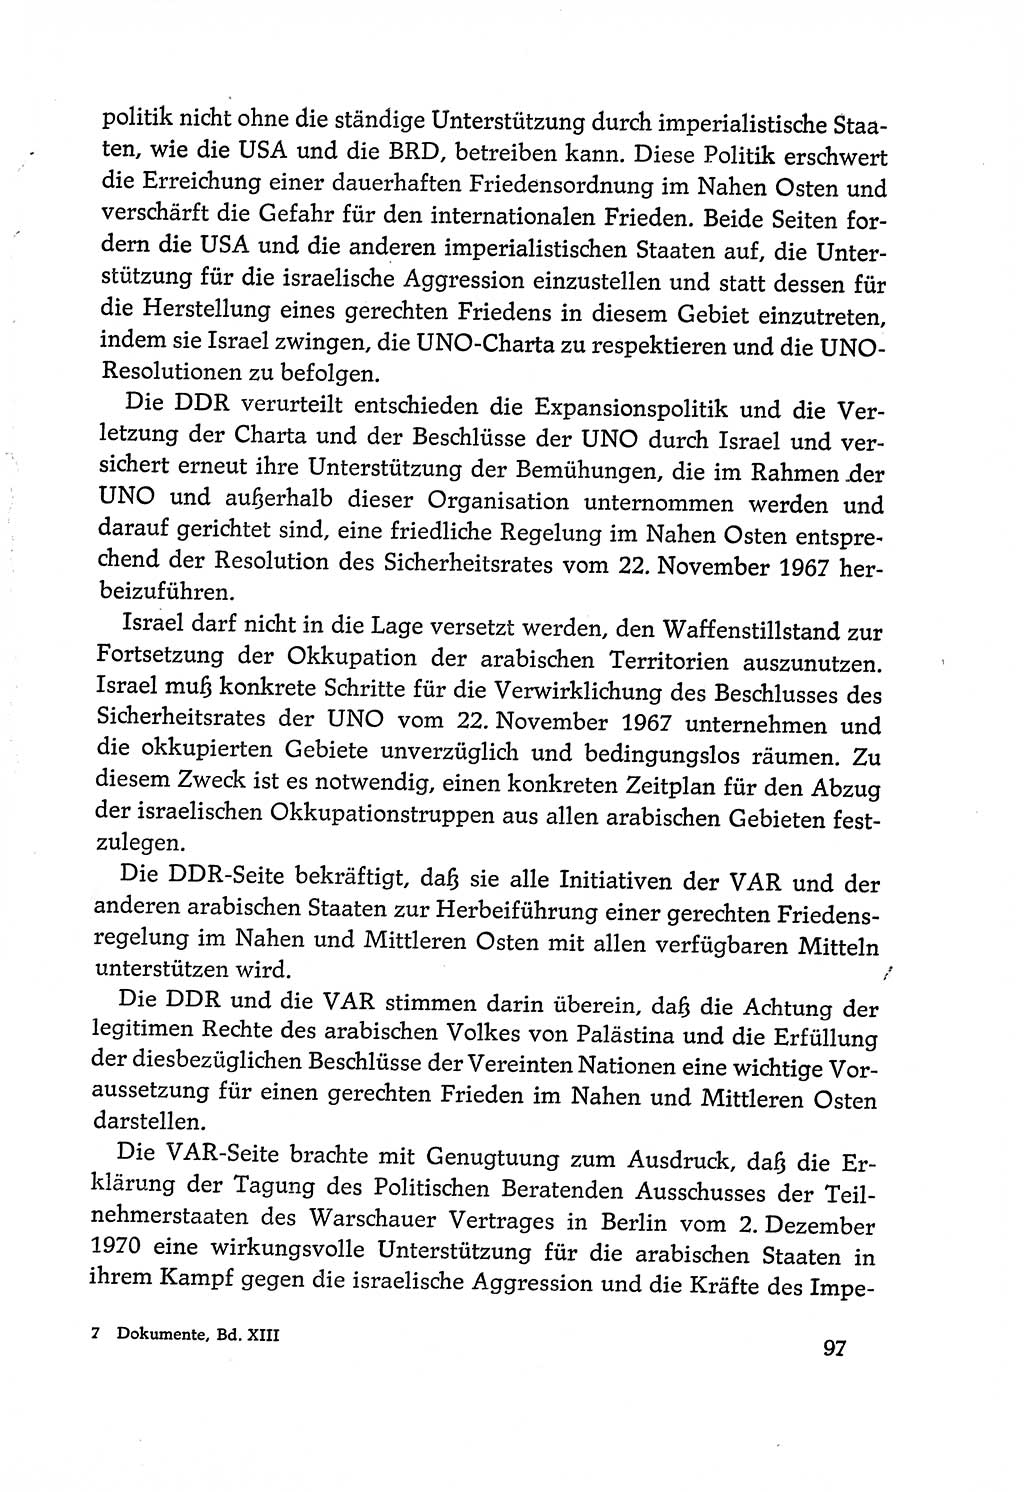 Dokumente der Sozialistischen Einheitspartei Deutschlands (SED) [Deutsche Demokratische Republik (DDR)] 1970-1971, Seite 97 (Dok. SED DDR 1970-1971, S. 97)